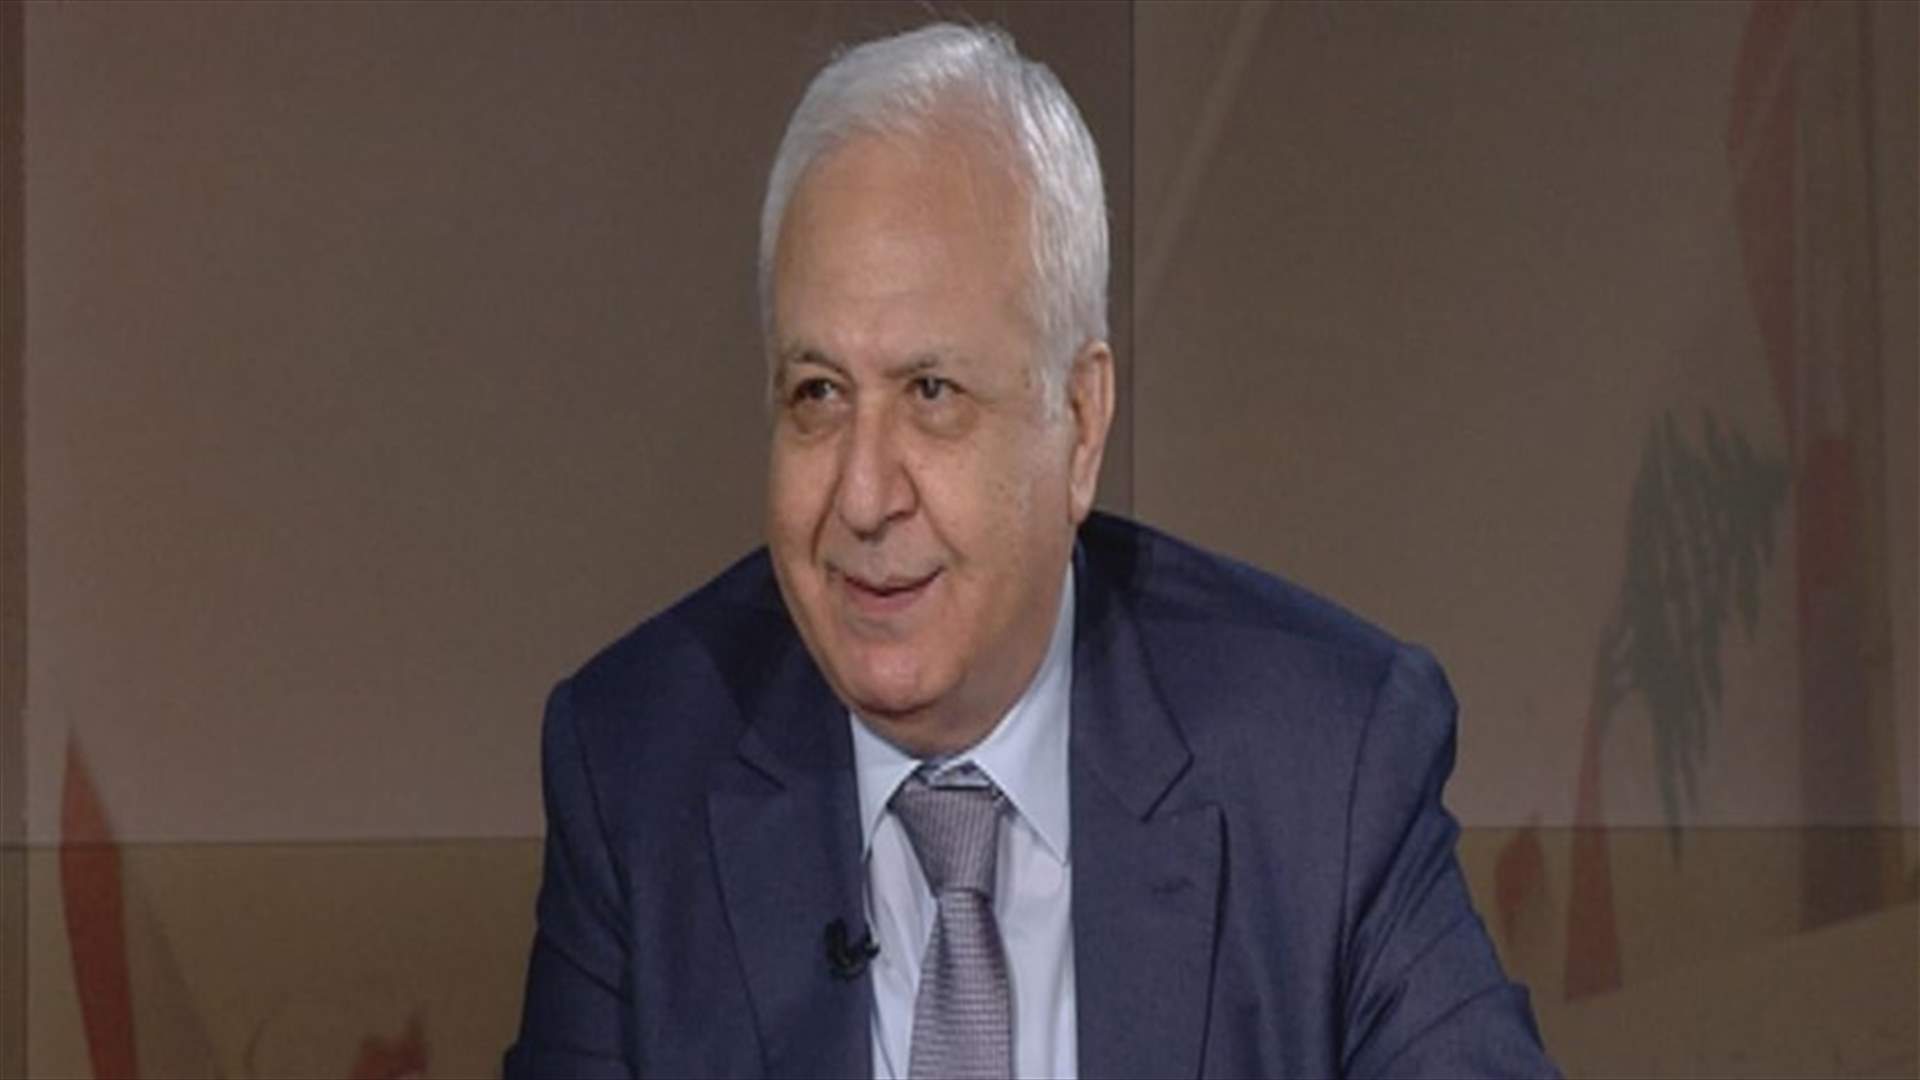 النائب السابق لحاكم مصرف لبنان لـ&quot;عشرين 30&quot;: الحالة اليوم هي نقص بالسيولة والدولة مجبرة على إصدار تشريعات لحماية المصارف